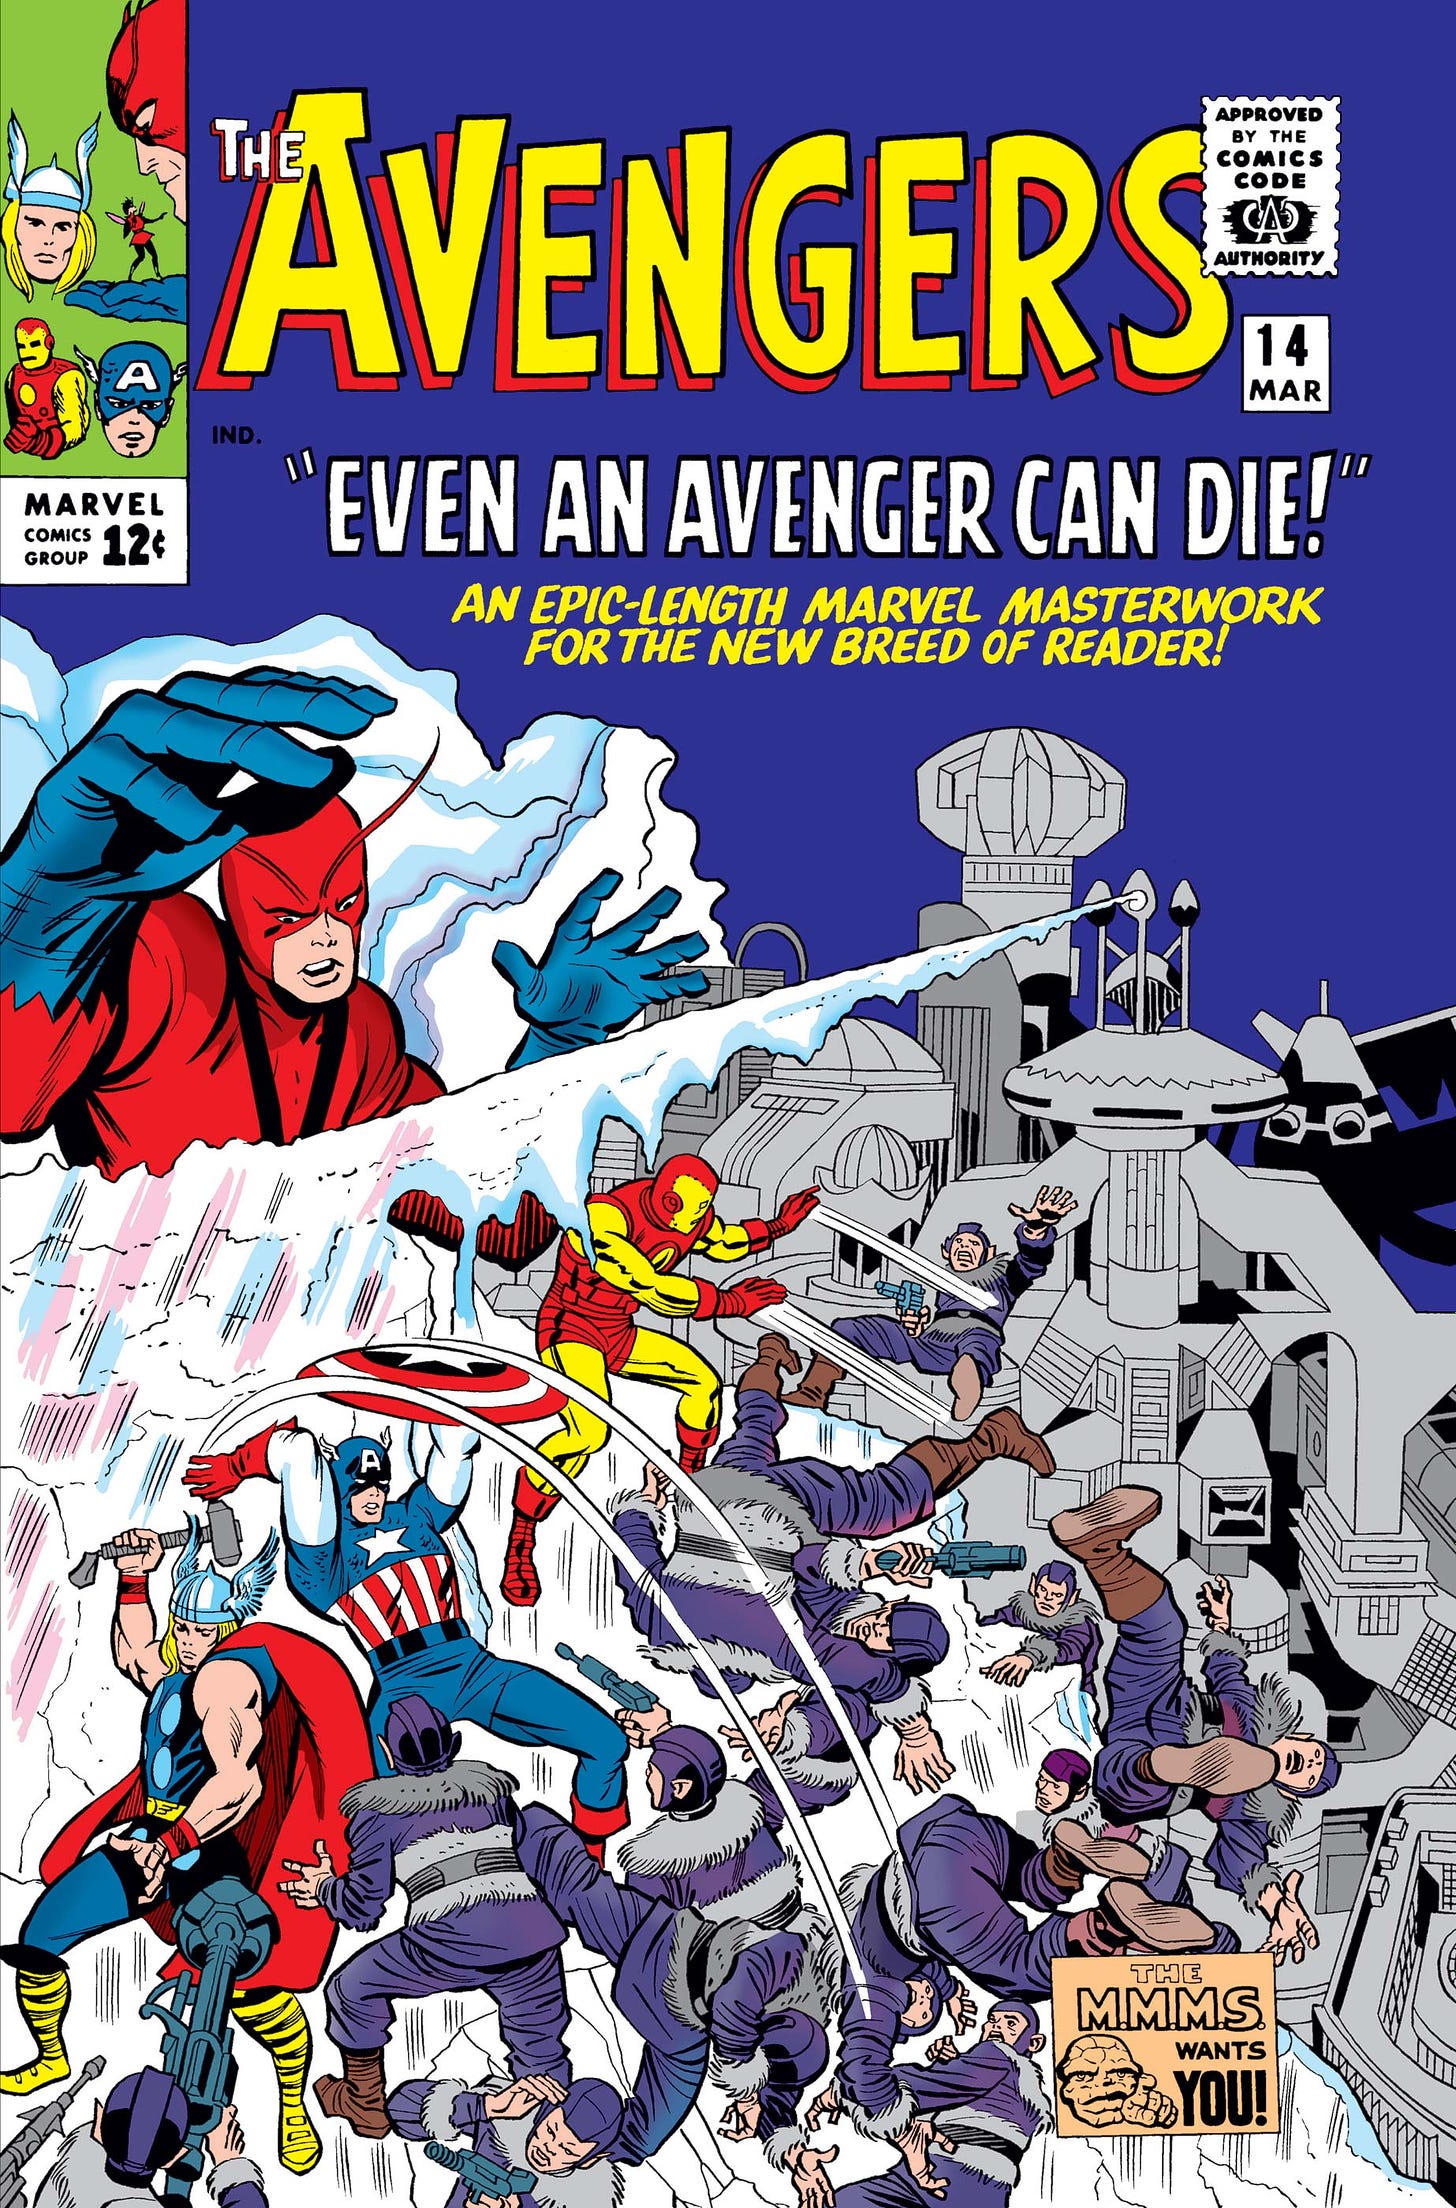 Avengers (1963) #14 | Comic Issues | Marvel